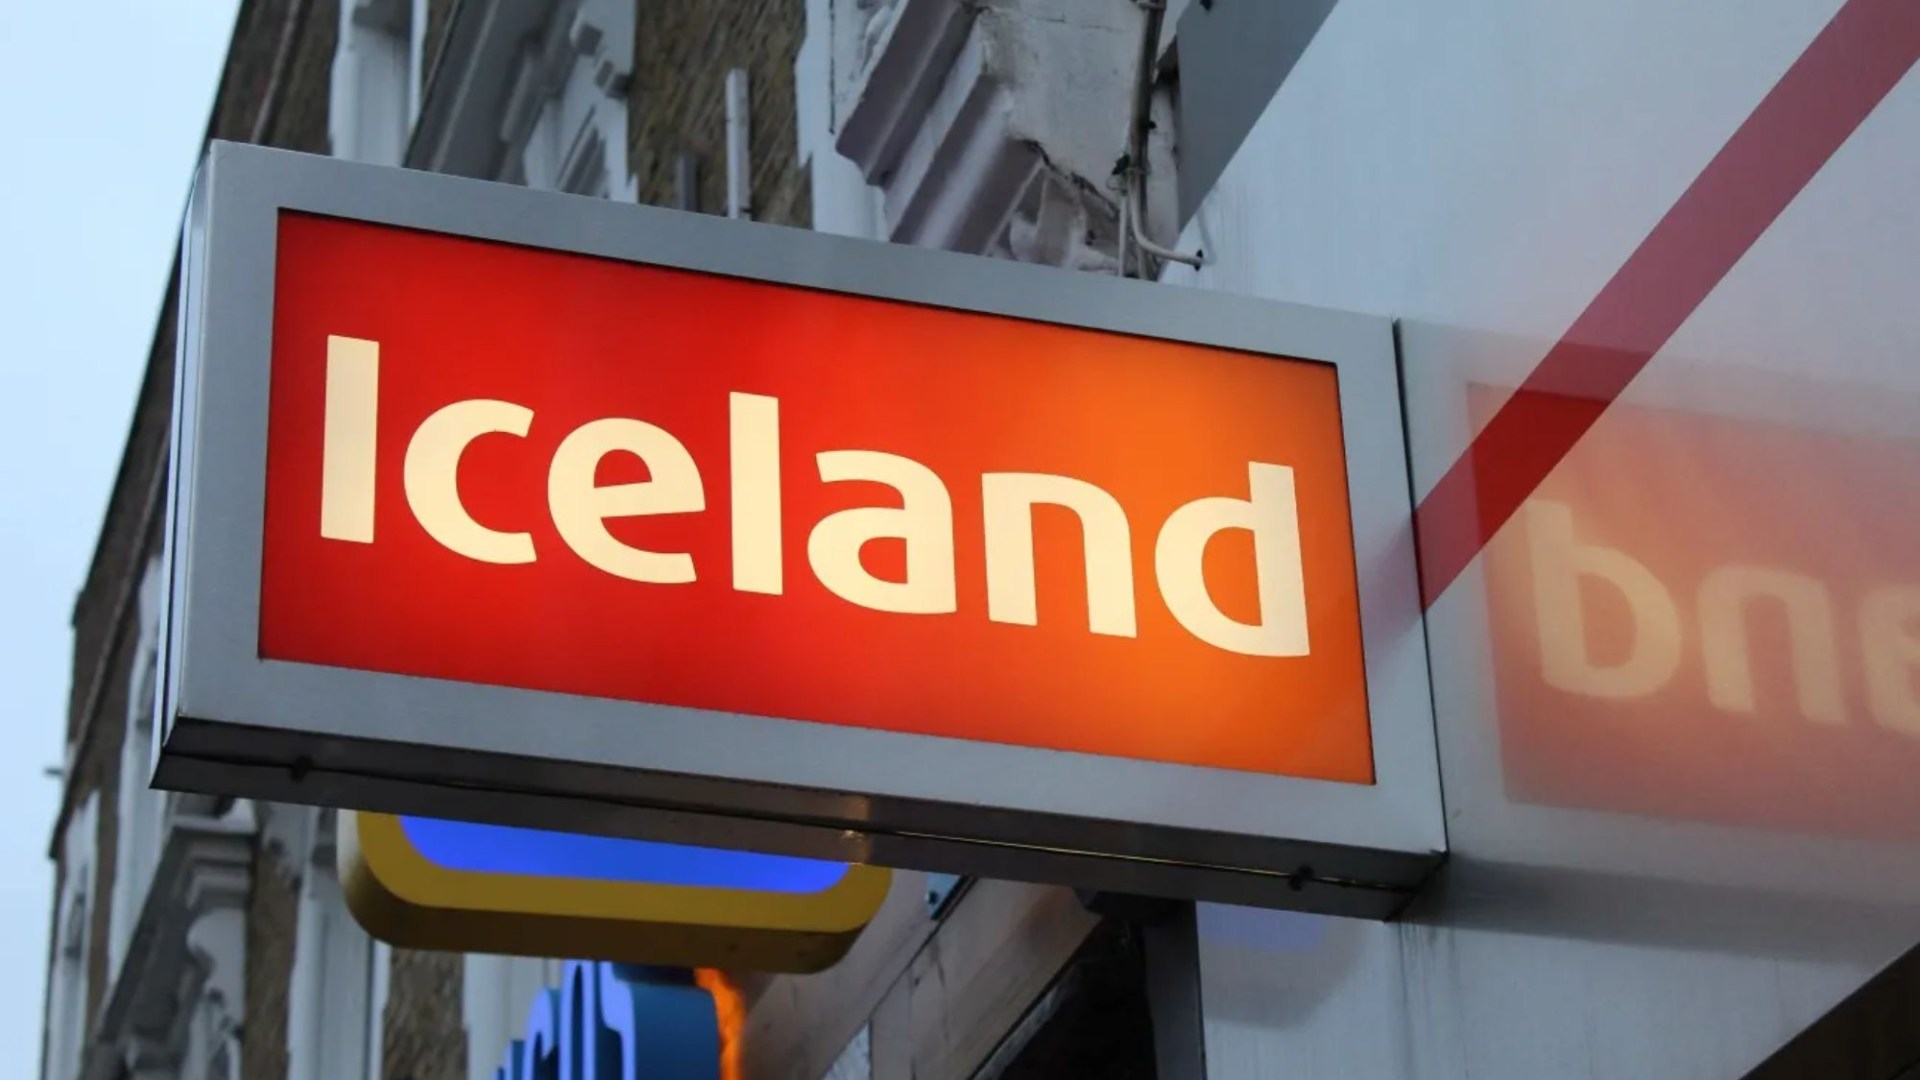 Islandia retira urgentemente de los estantes un producto básico congelado de 2,50 libras y emite una advertencia de “no comer” por temor a un “riesgo para la salud”